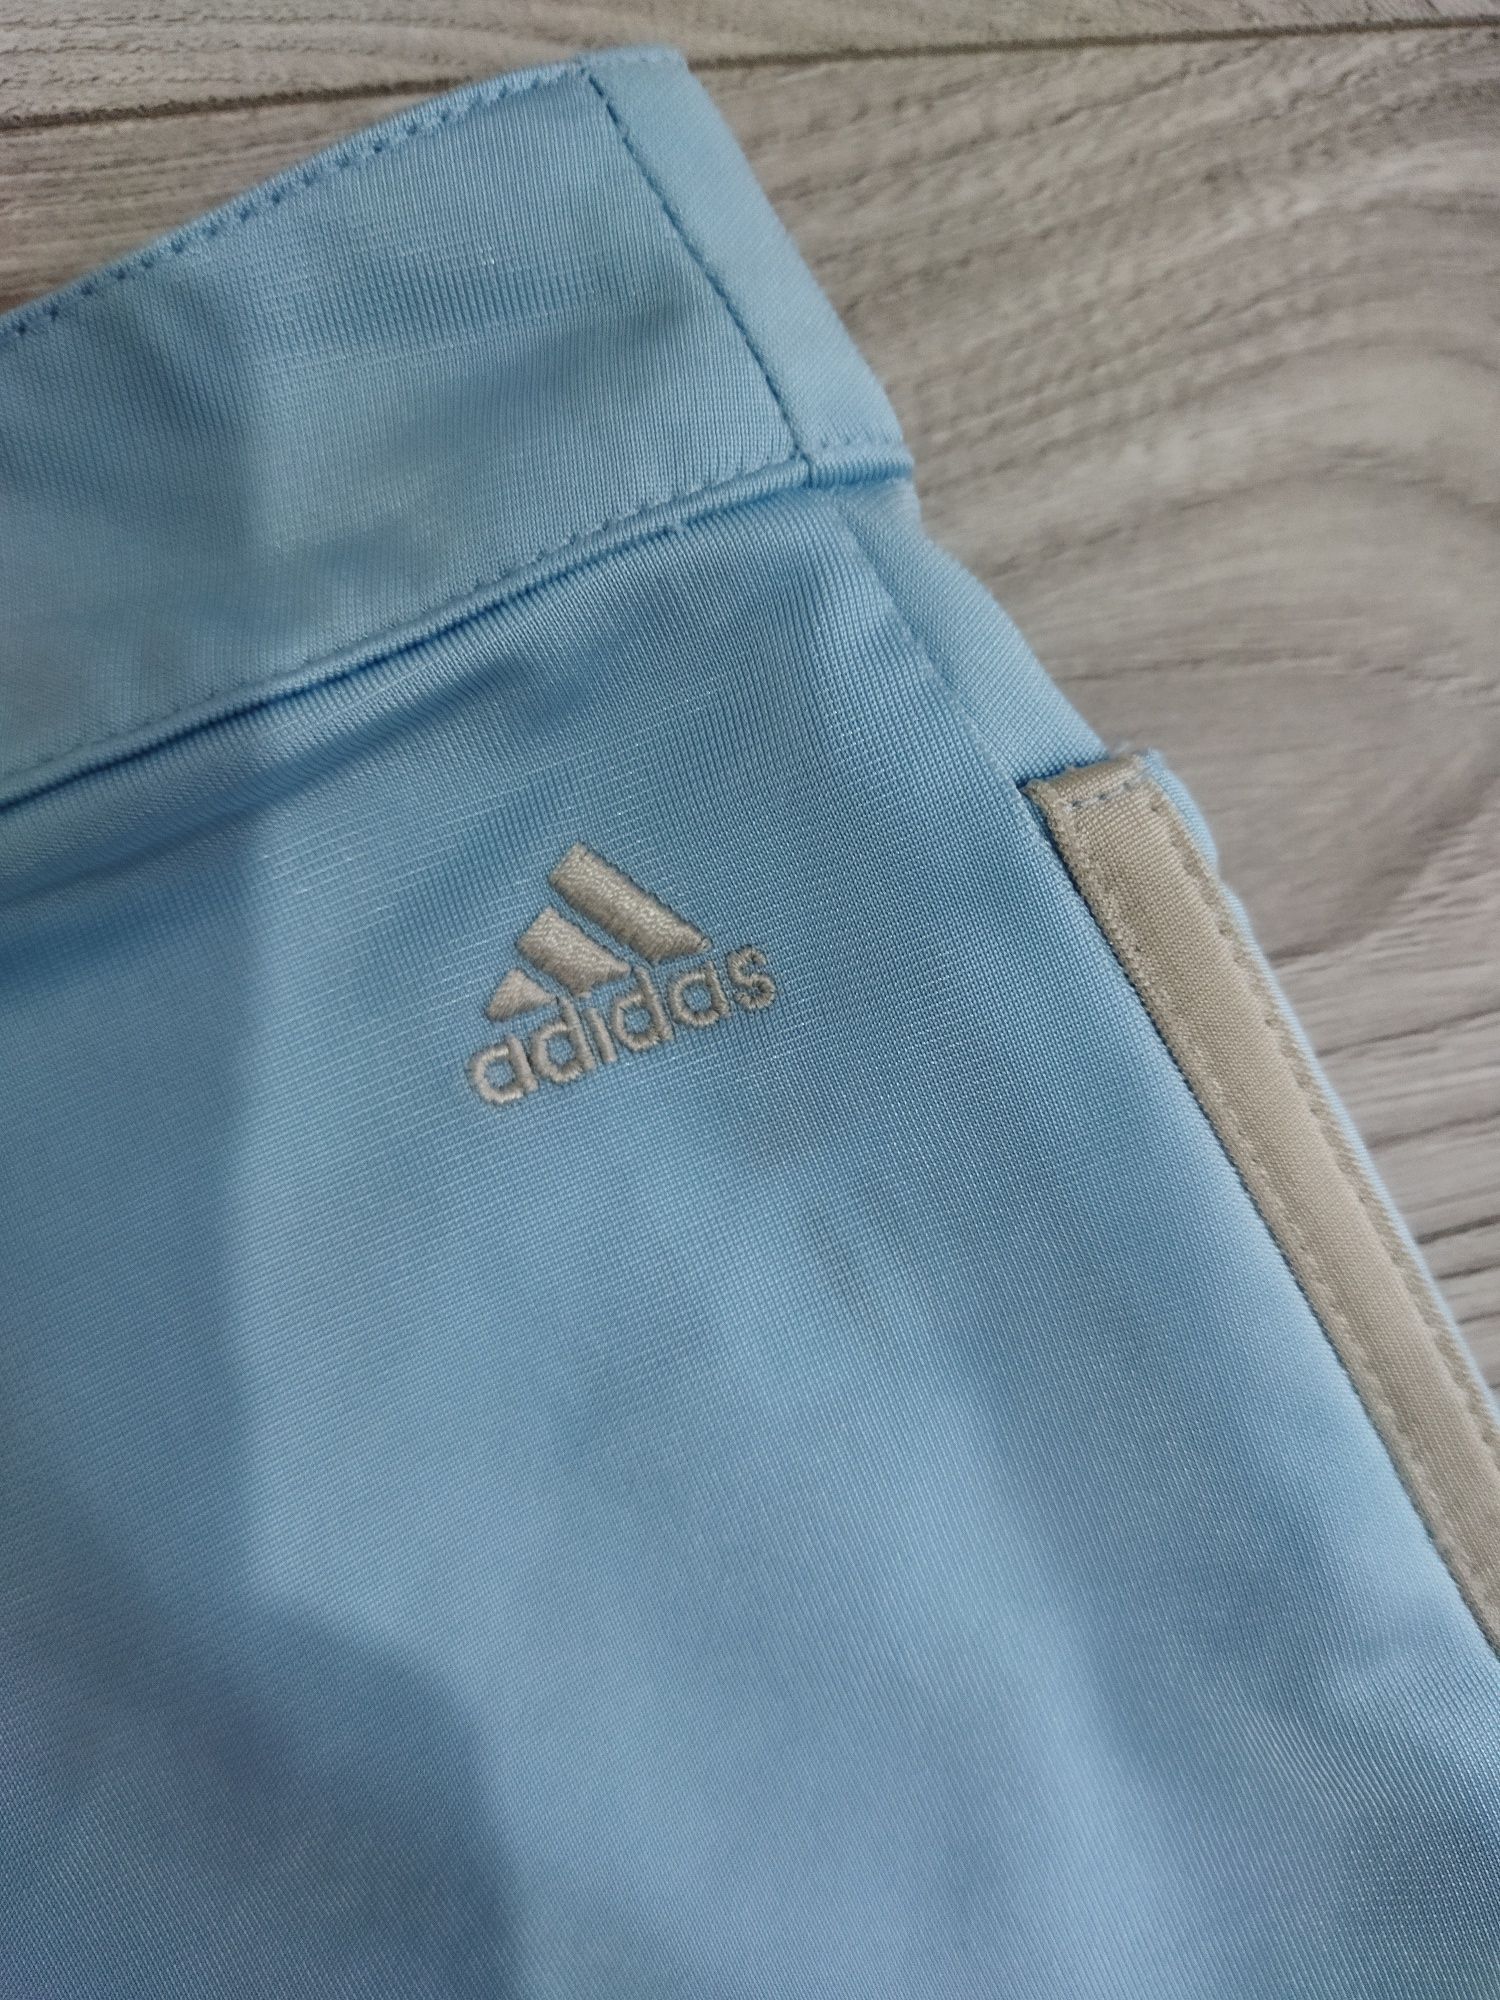 Pantaloni scurți bleu sport originali Adidas mărimea S 36